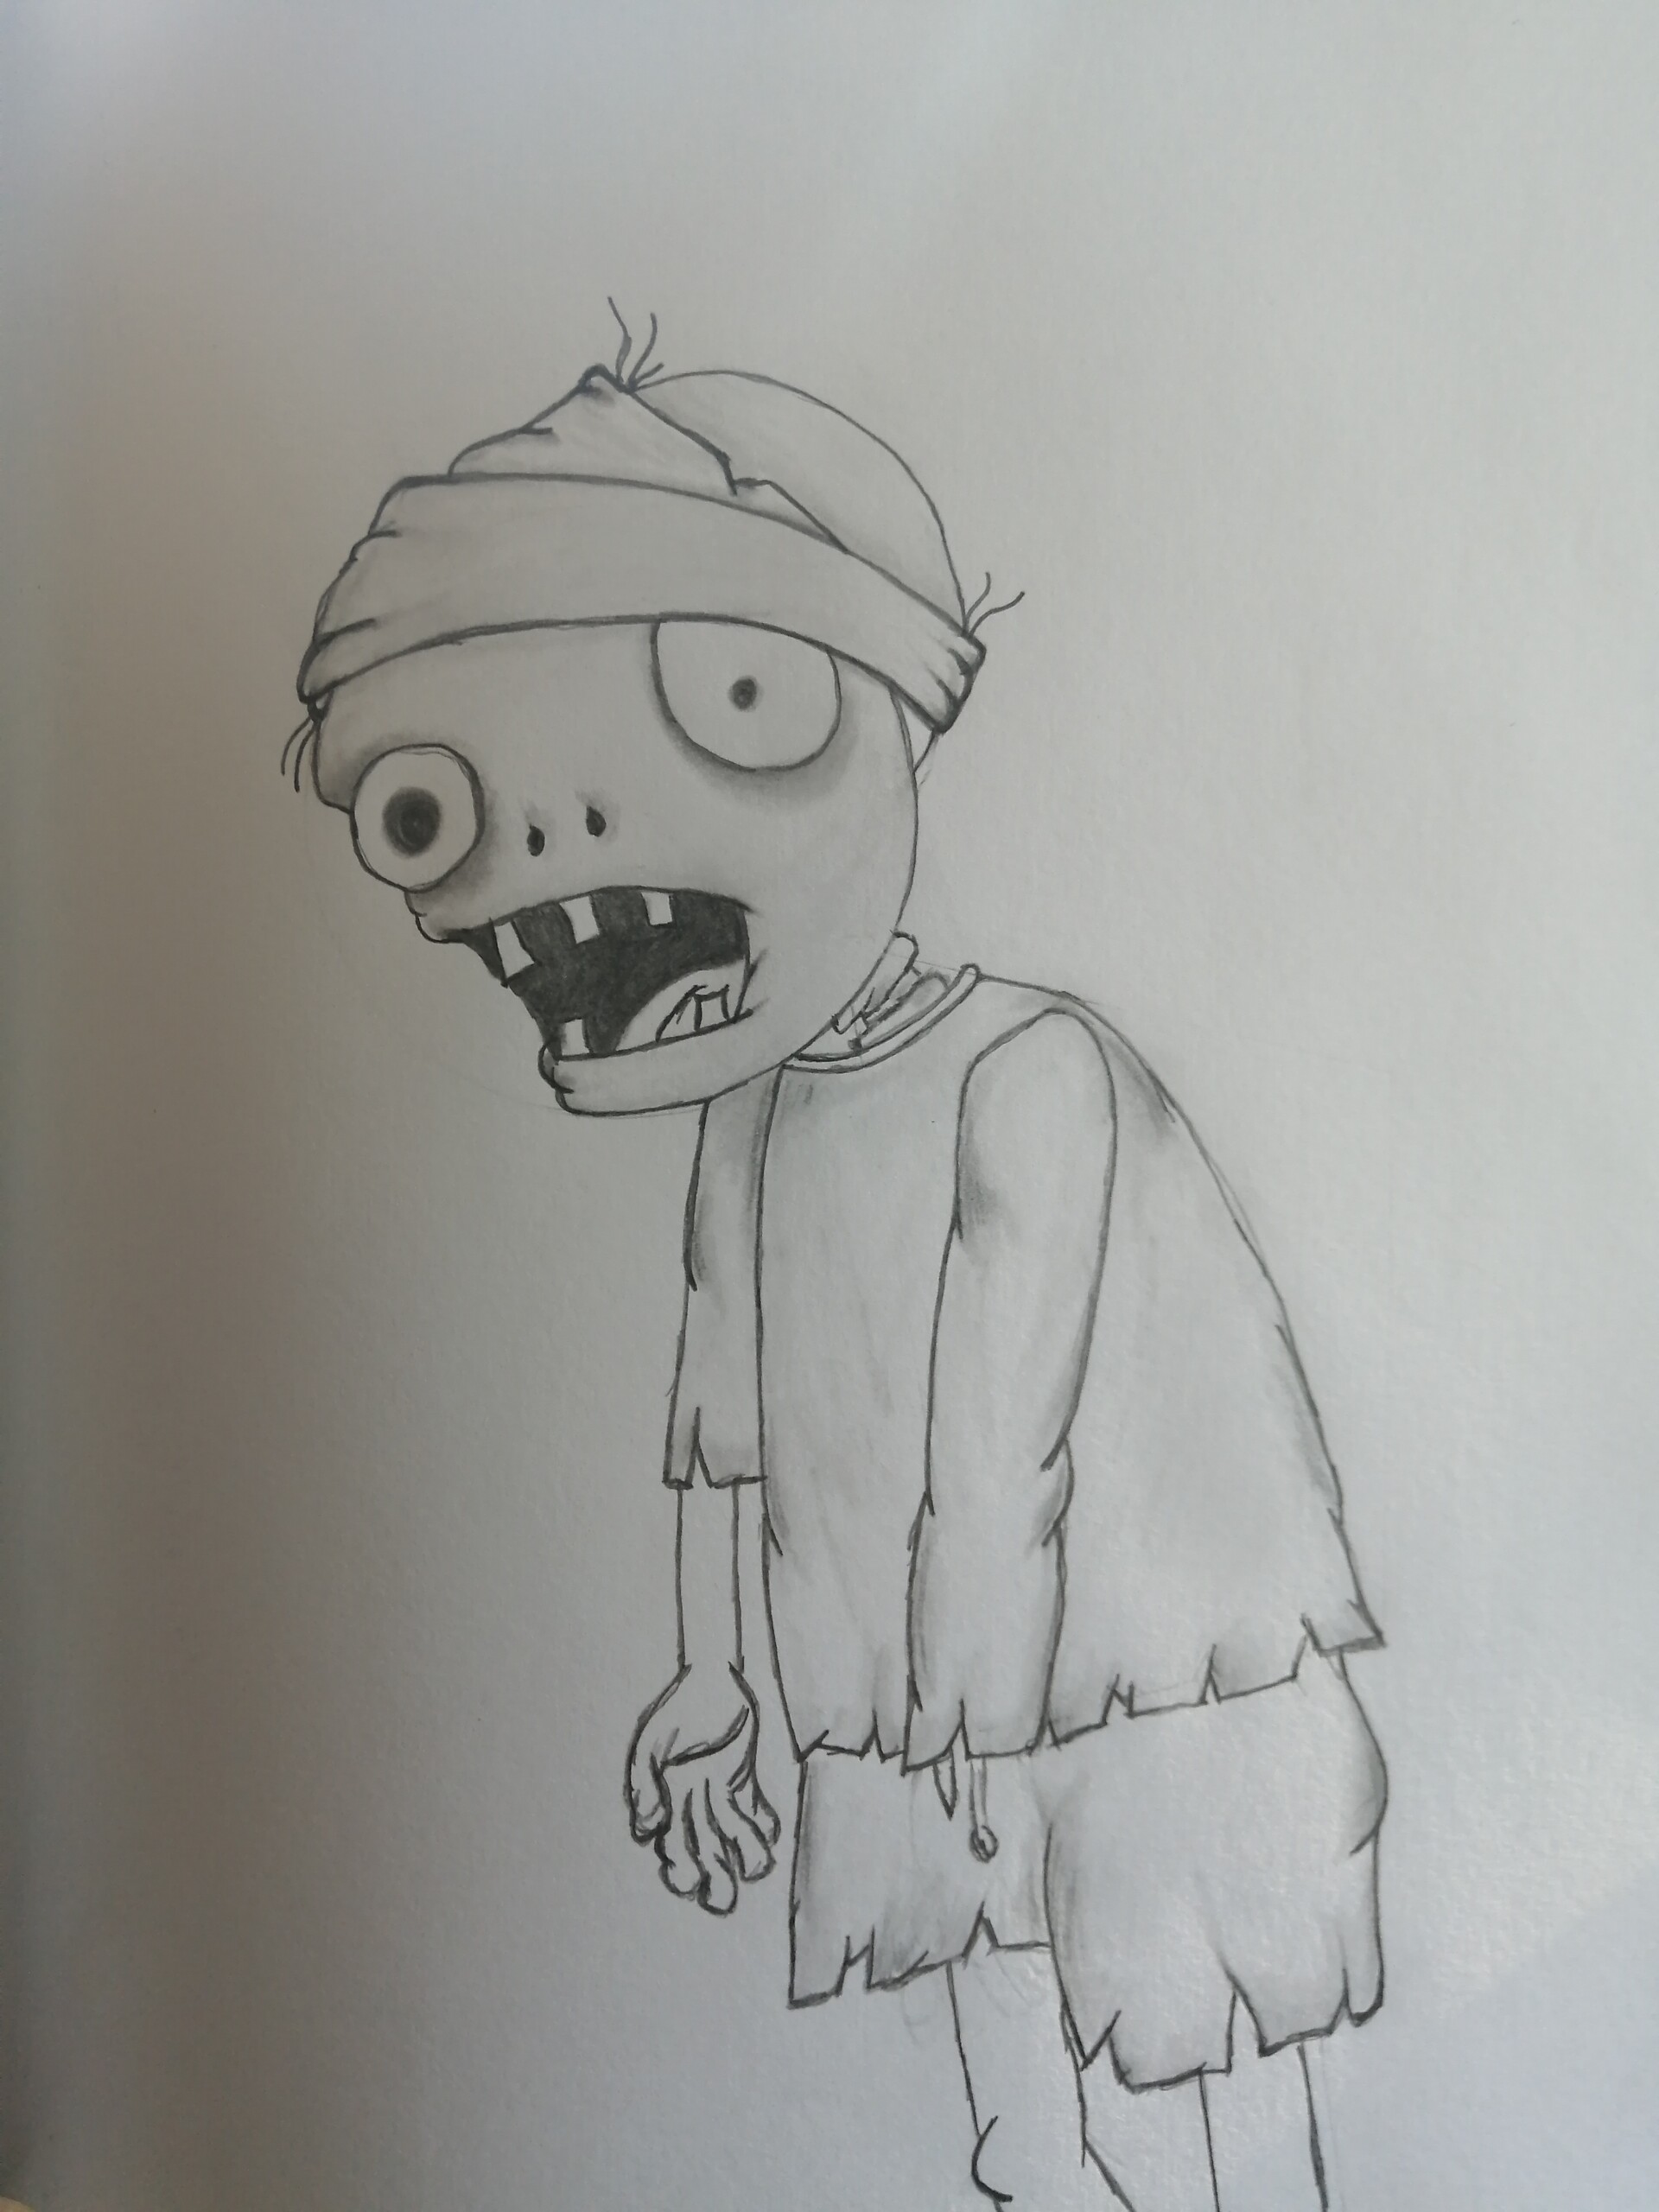 ArtStation - Cartoon Zombie Pencil Sketches